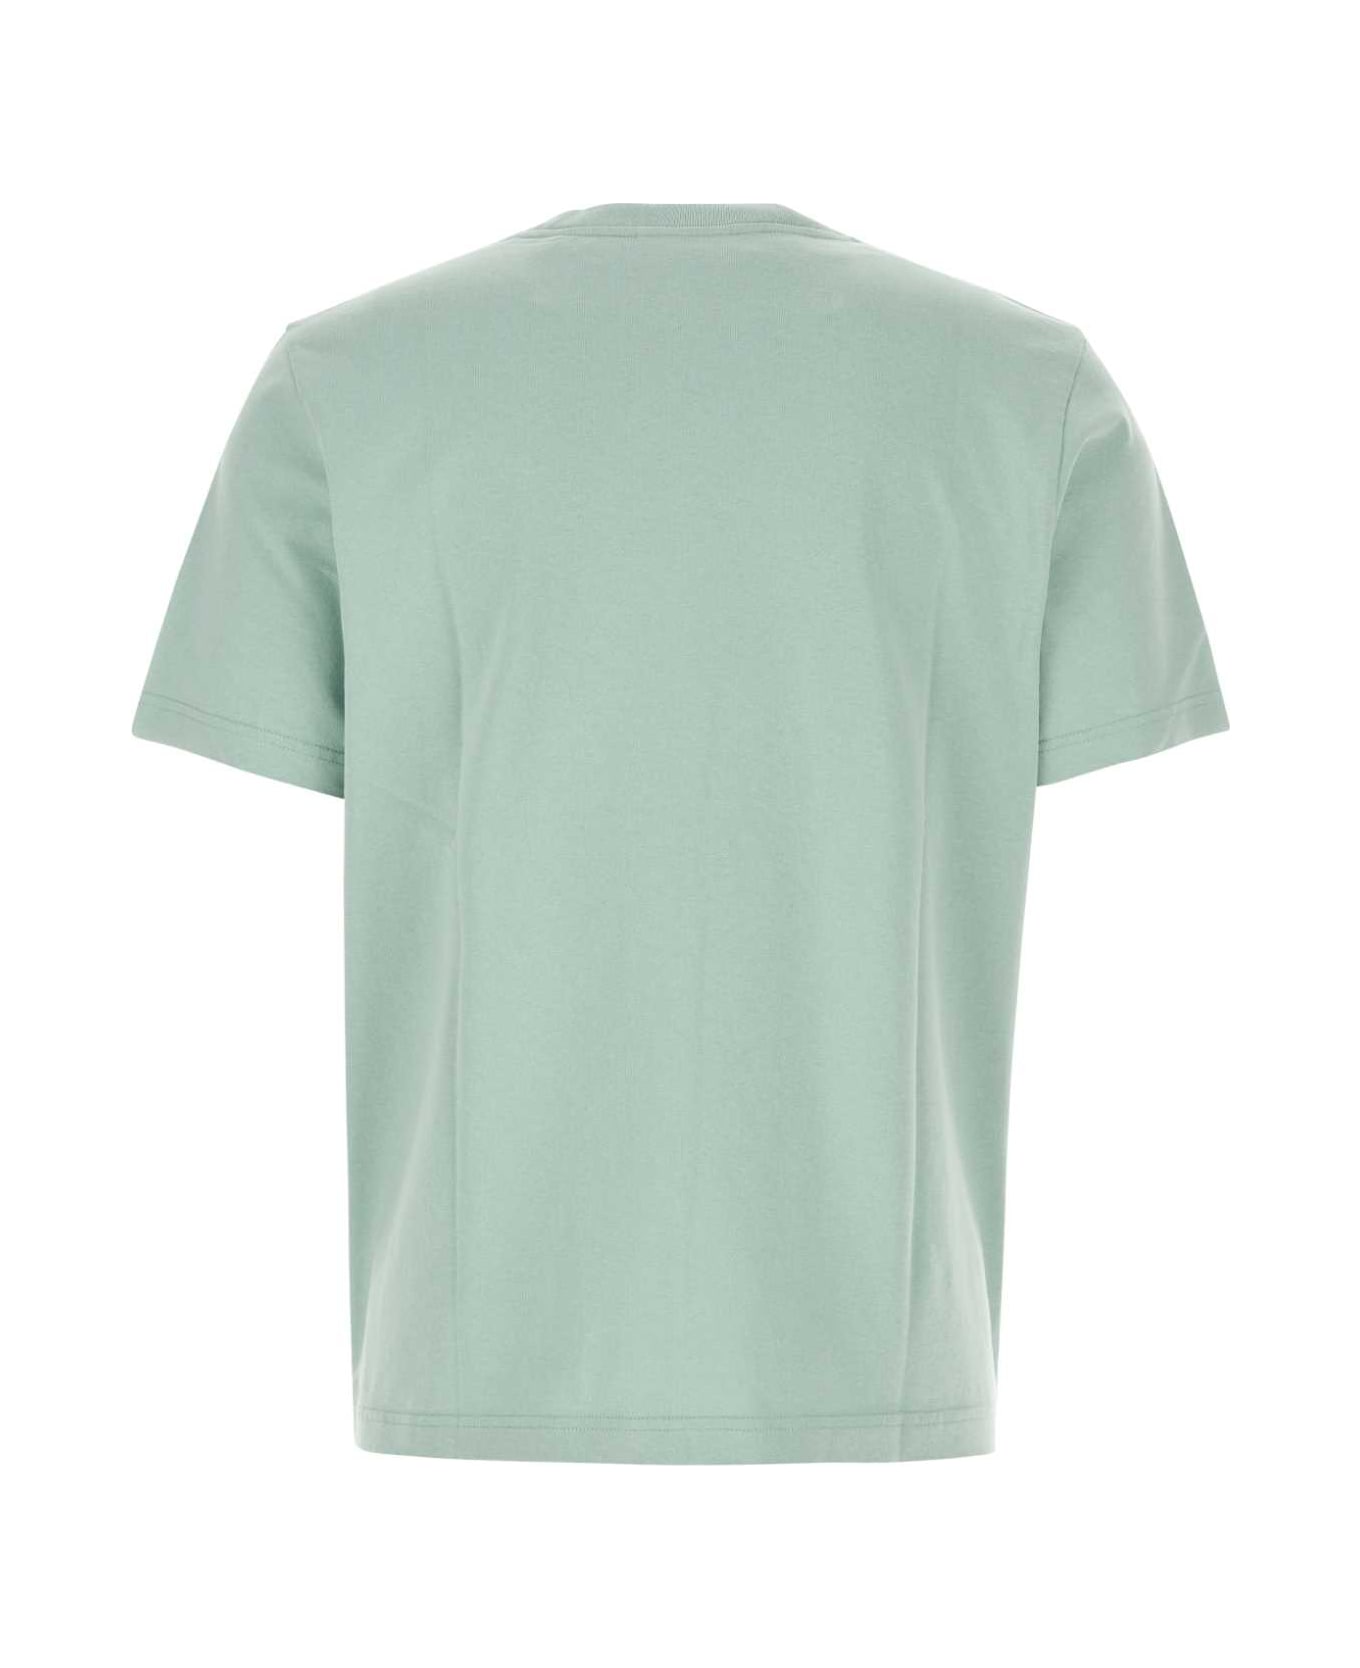 Maison Kitsuné Sea Green Cotton T-shirt - SEAFOAMBLUE